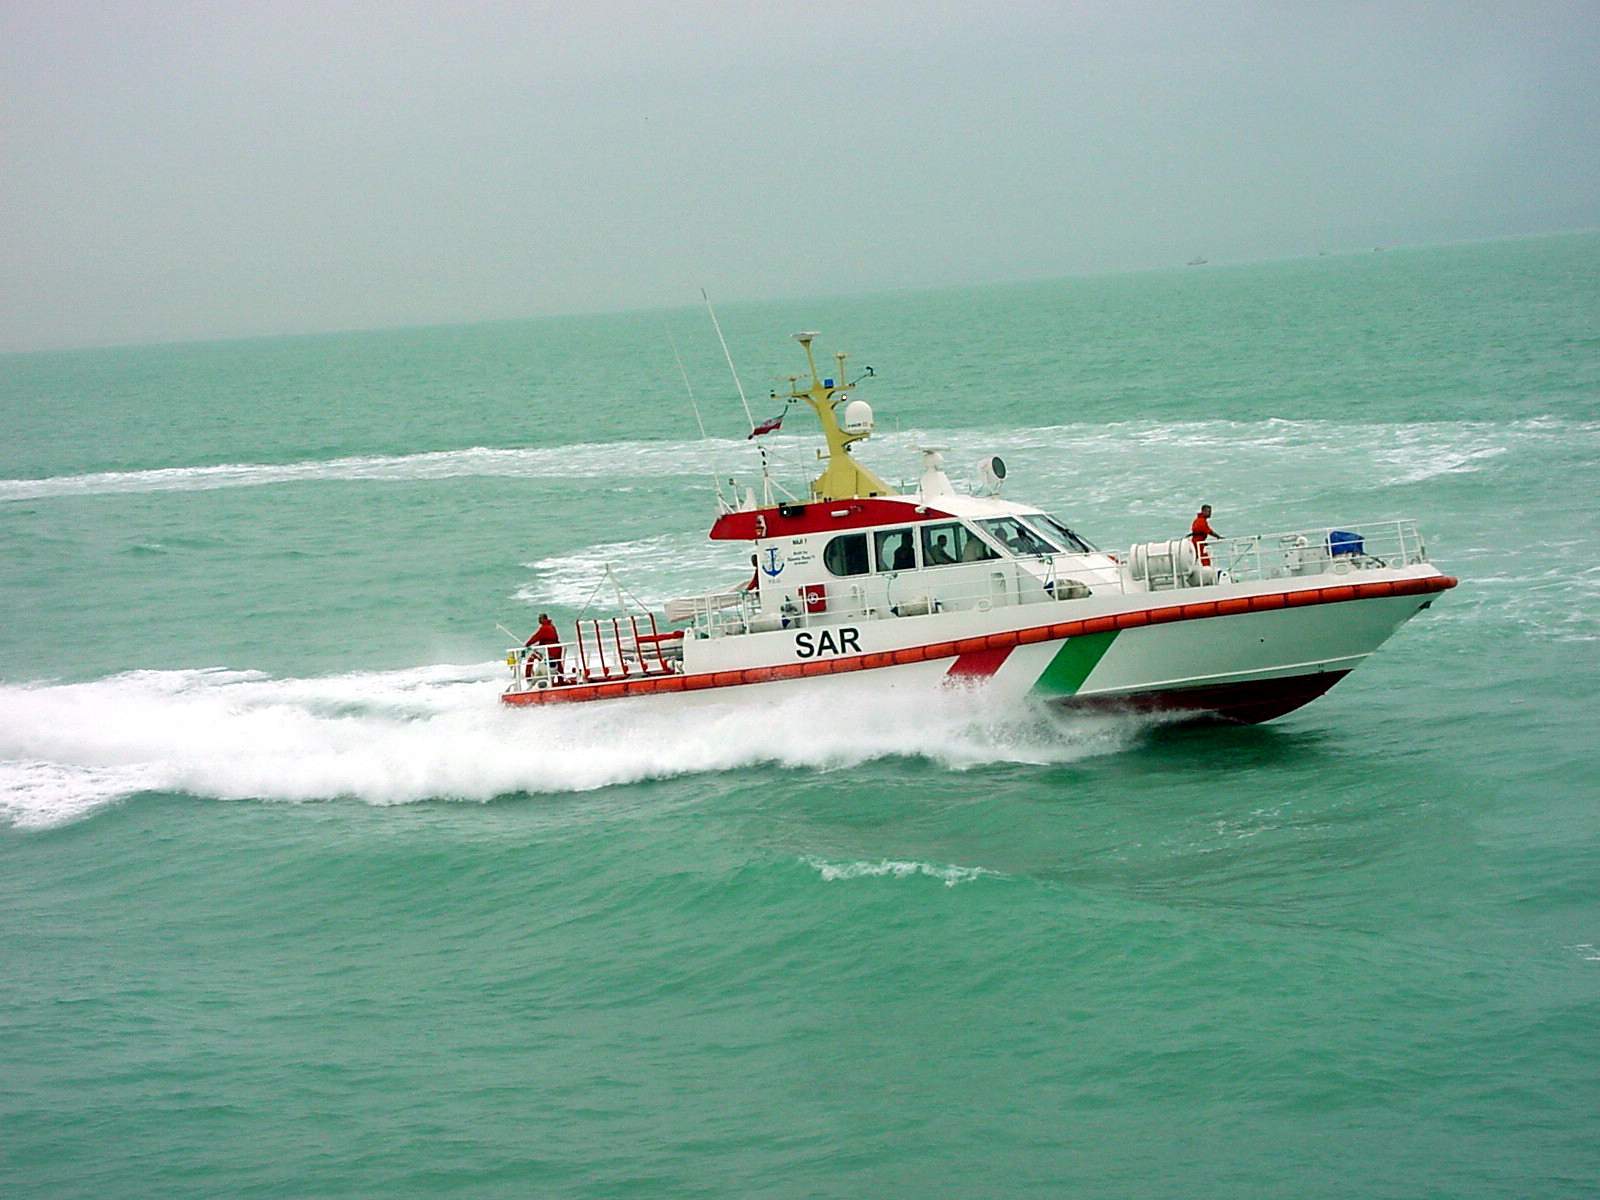 عملیات امداد پزشکی به دو خدمه شناور در خلیج فارس